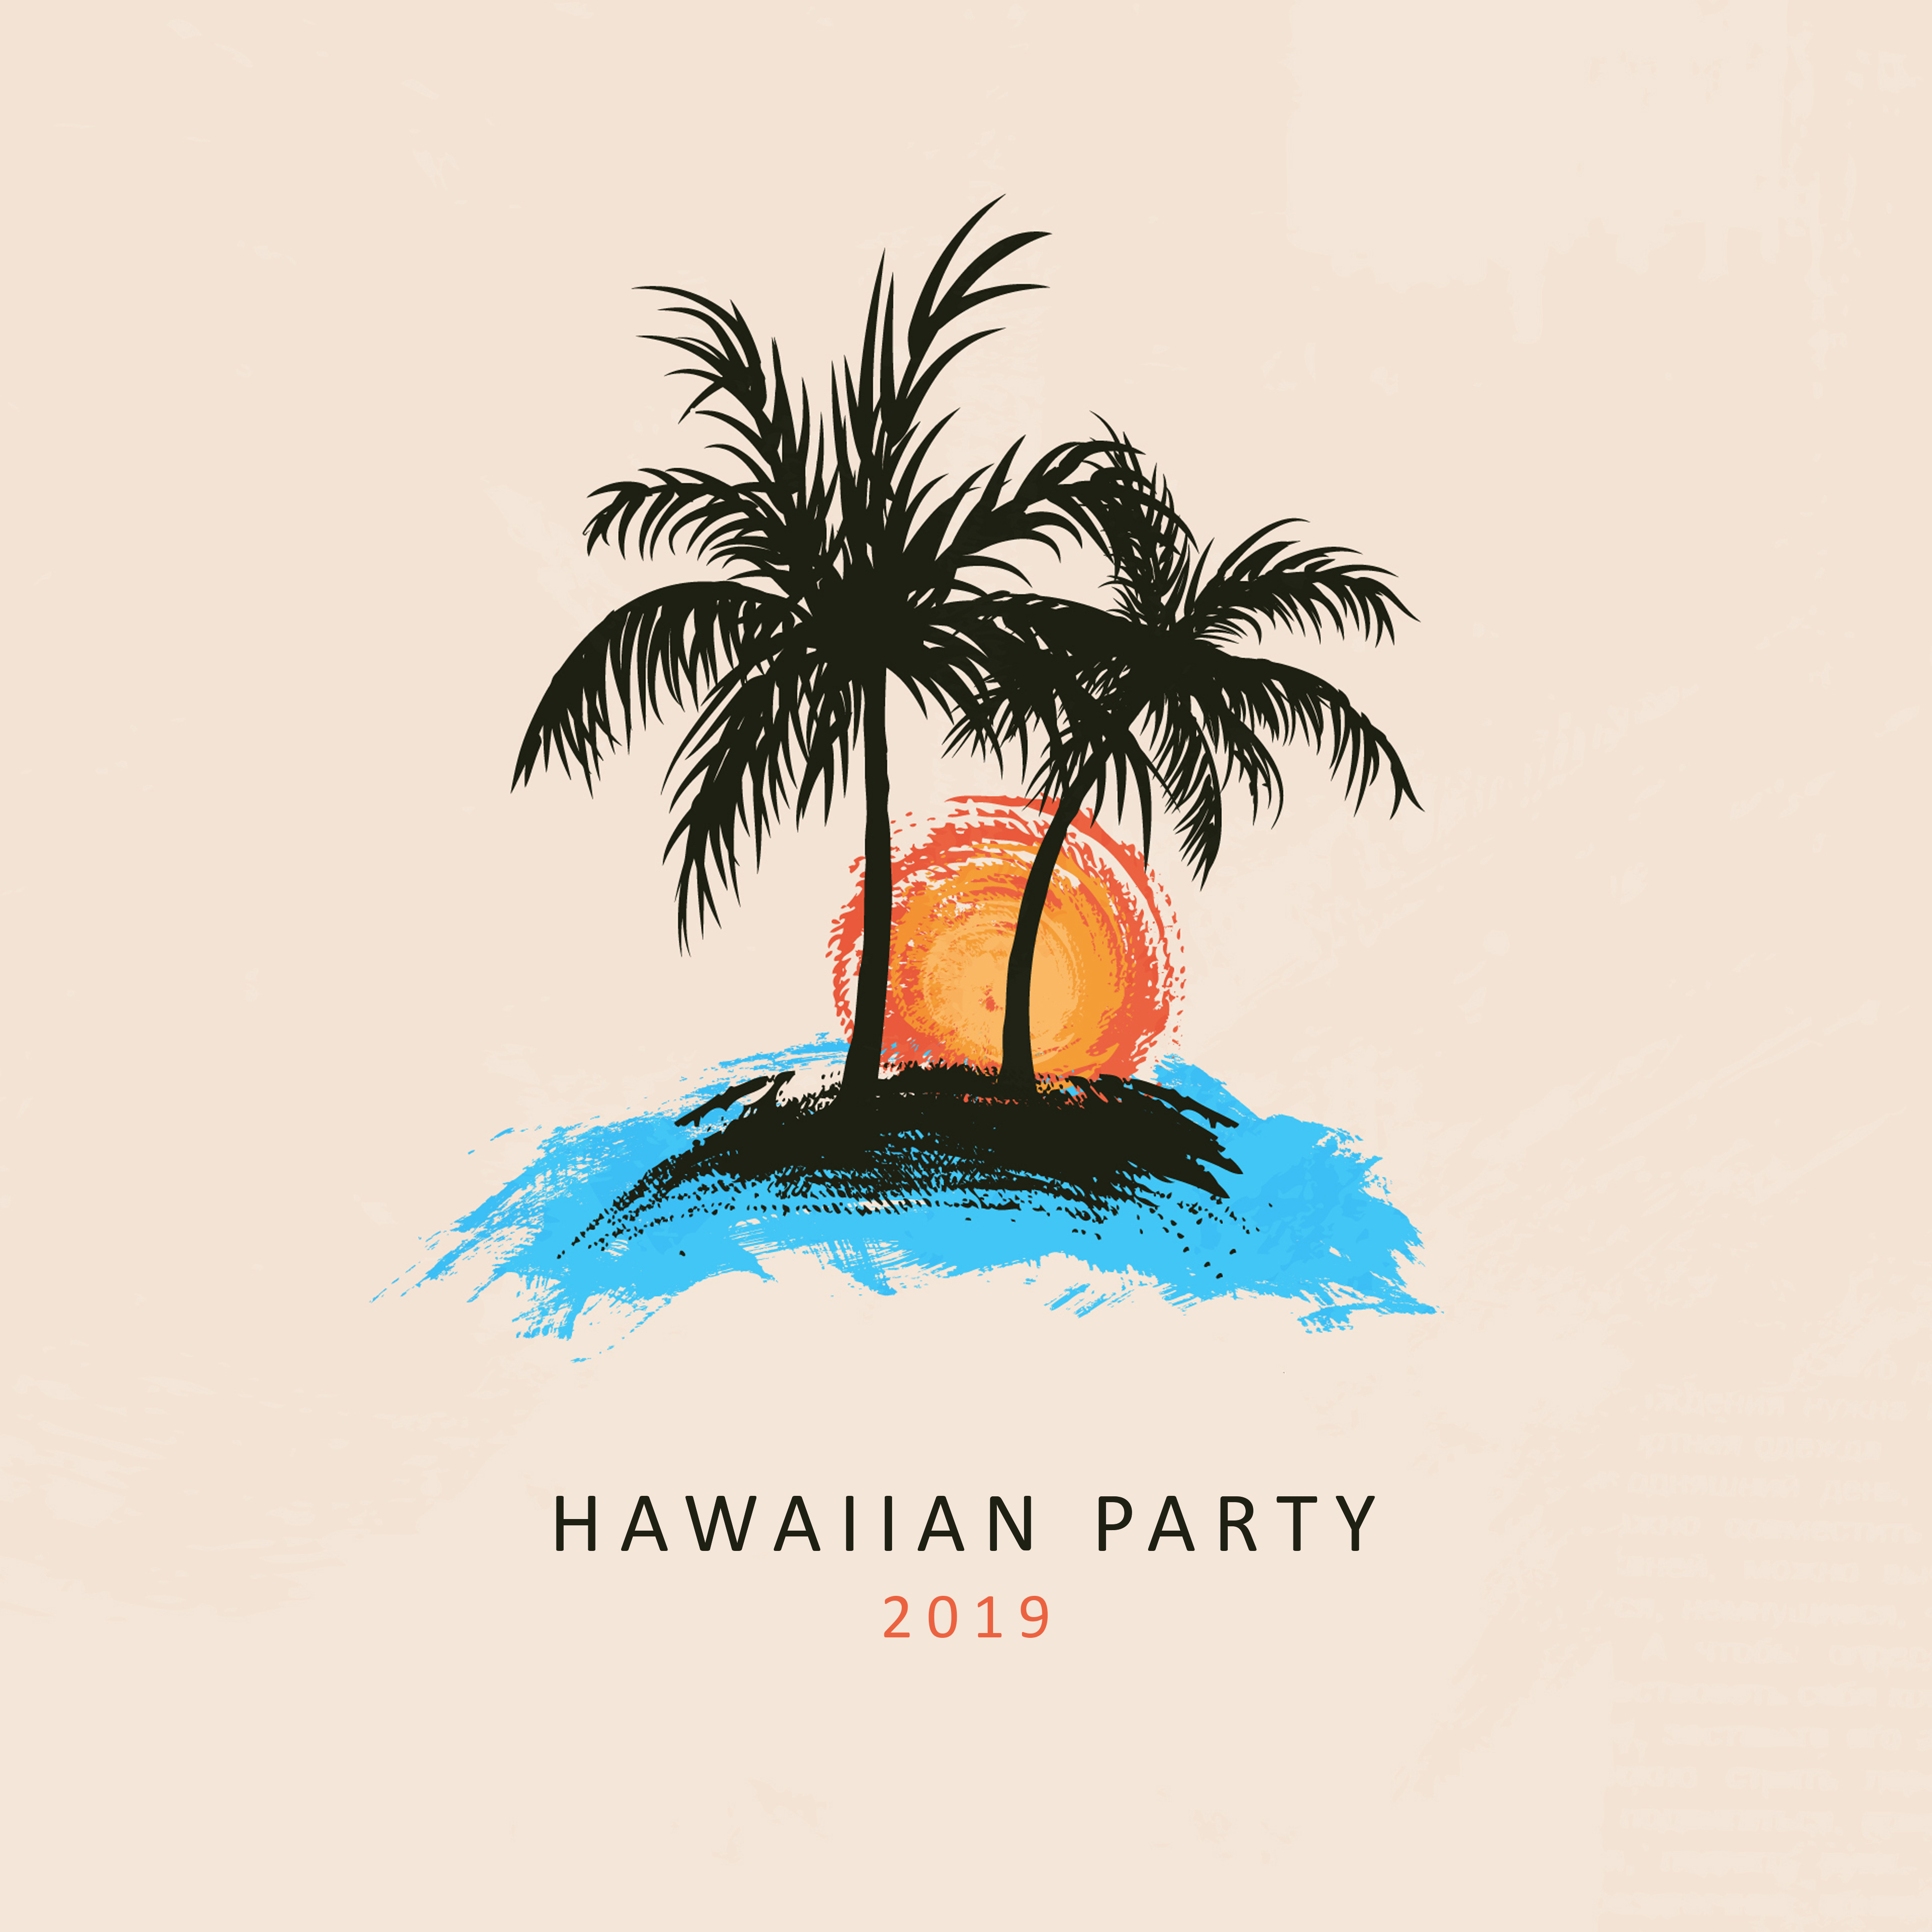 Hawaiian Party 2019